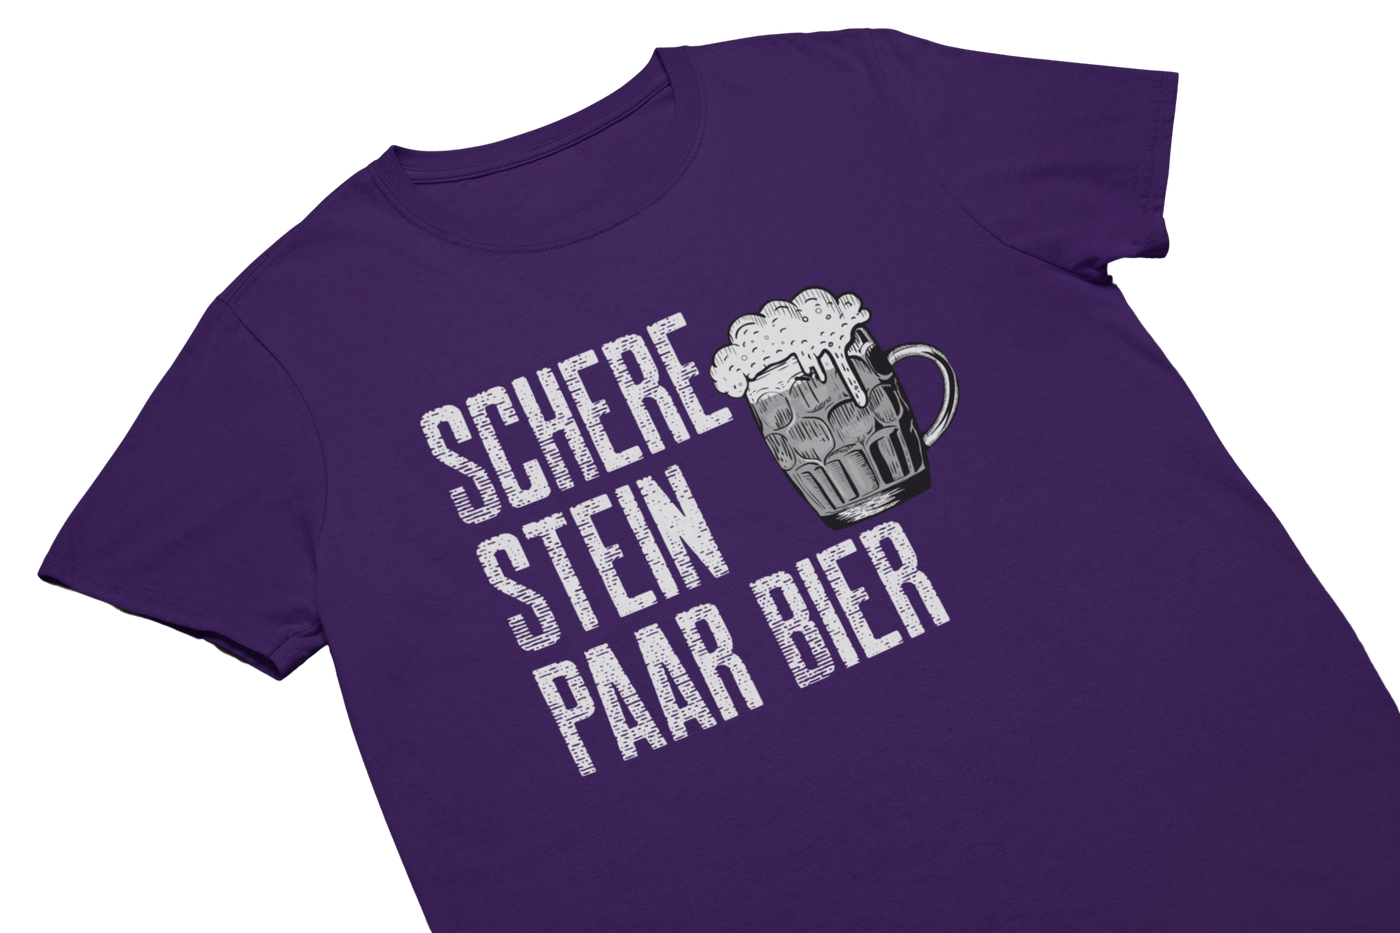 SCHERE STEIN PAAR BIER - T-Shirt Lila